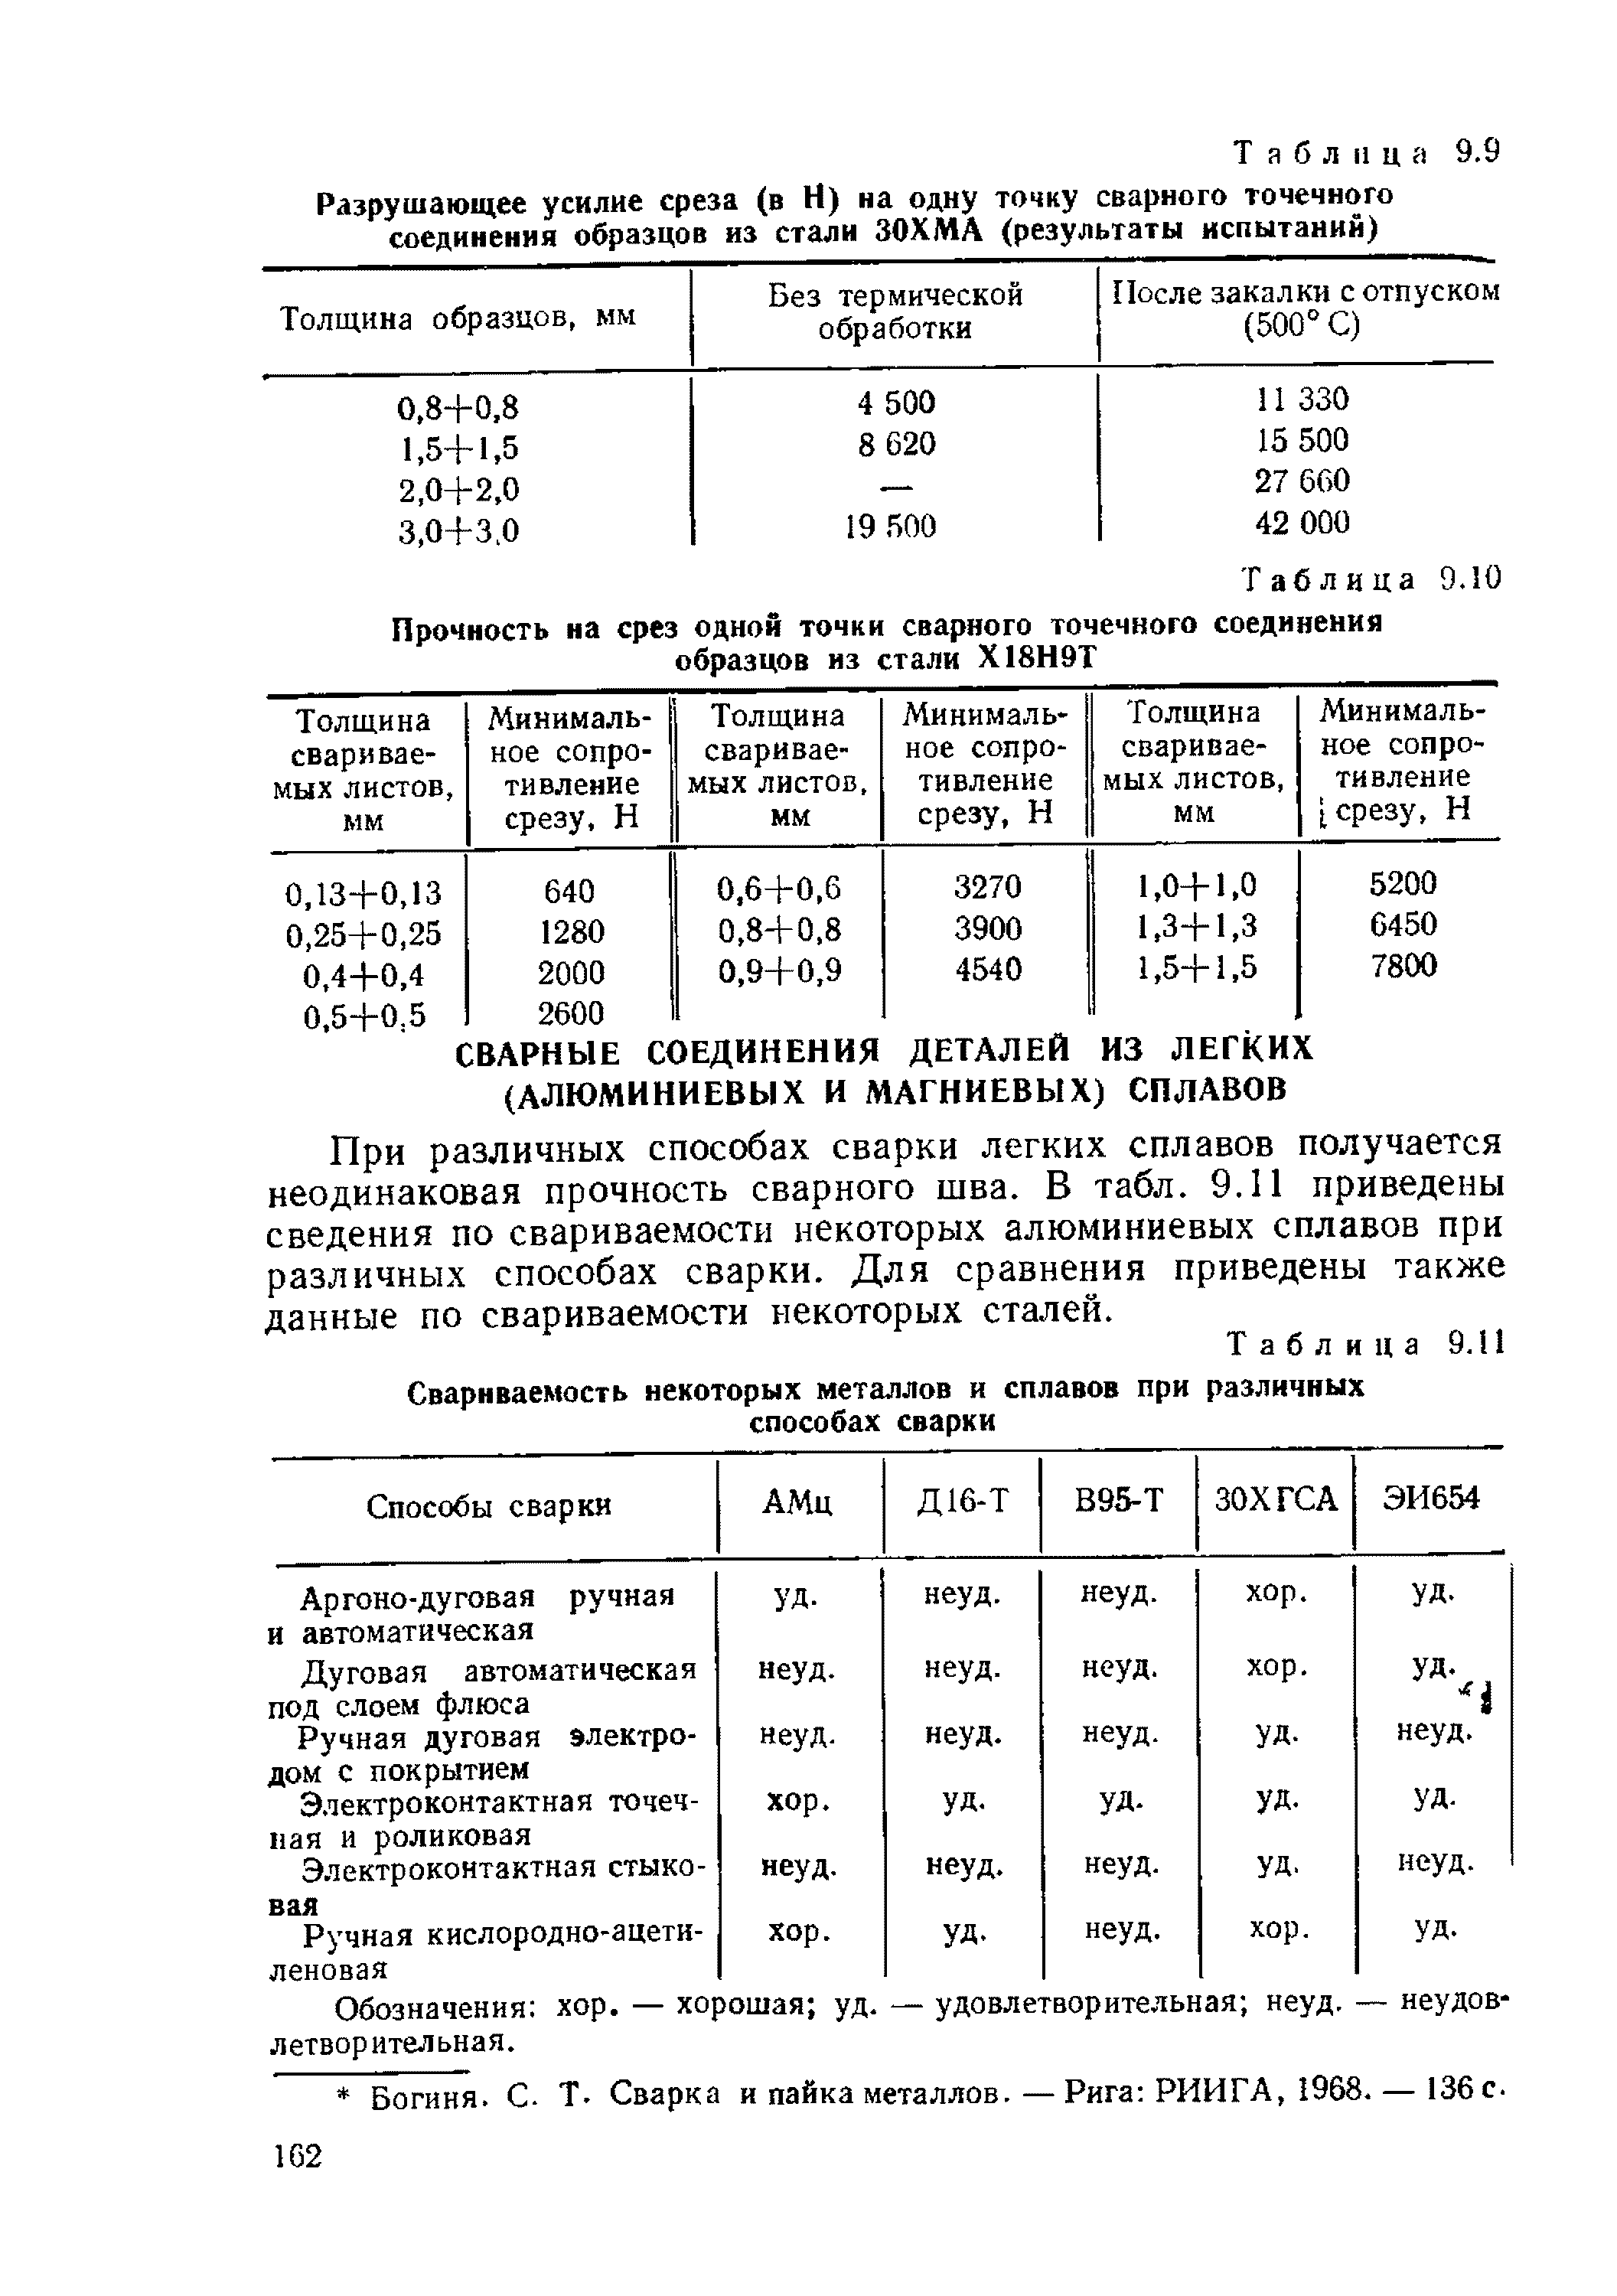 Таблица 9.11 Свариваемость некоторых металлов и сплавов при различных способах сварки
